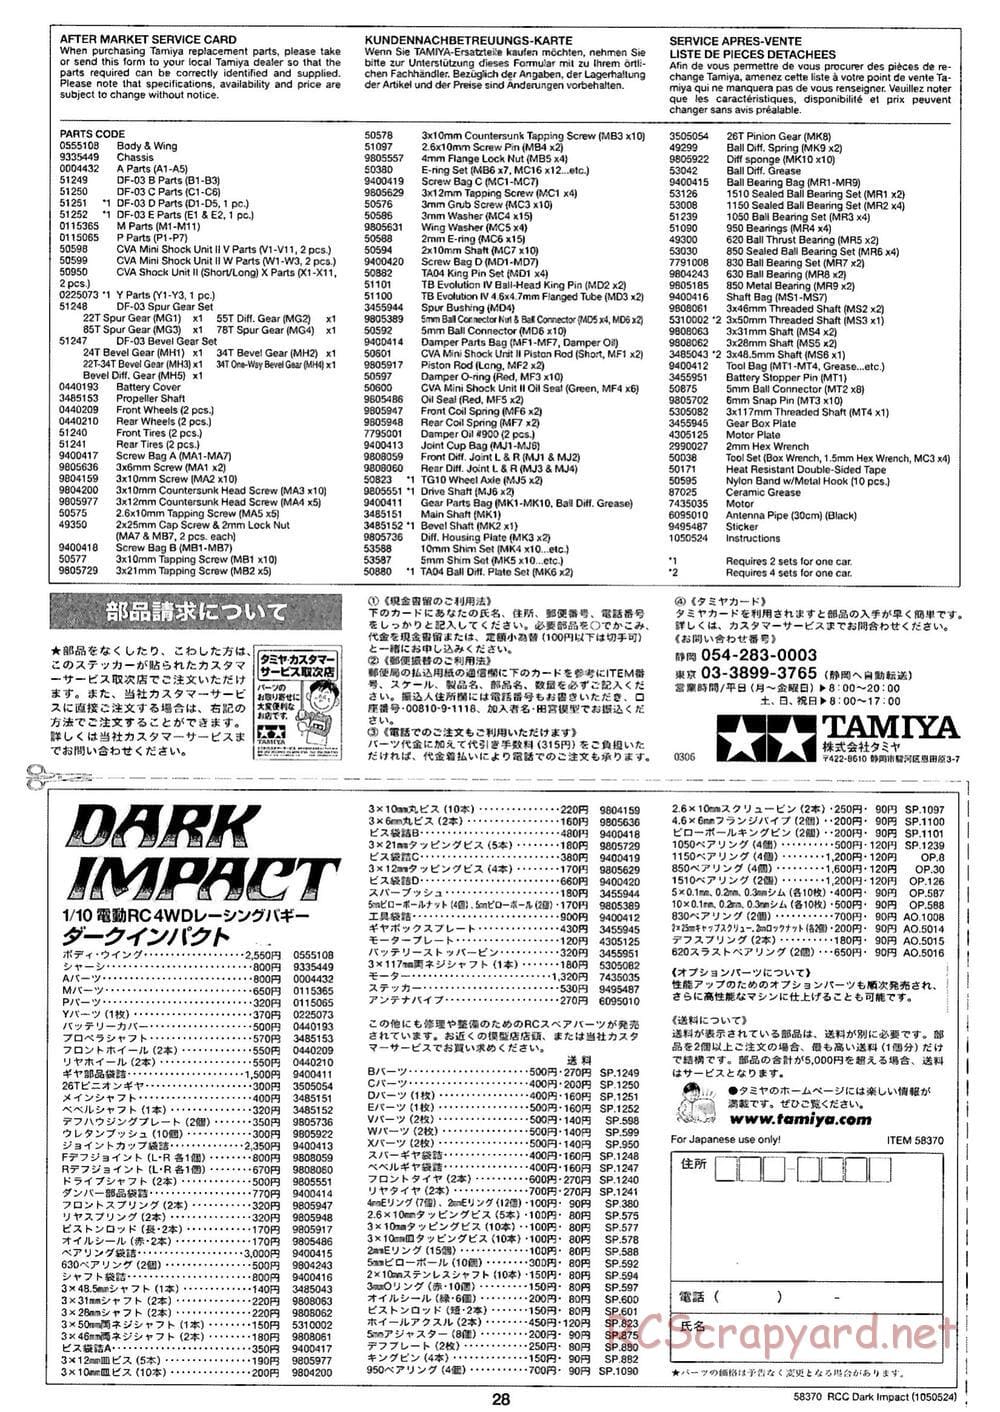 Tamiya - Dark Impact Chassis - Manual - Page 28